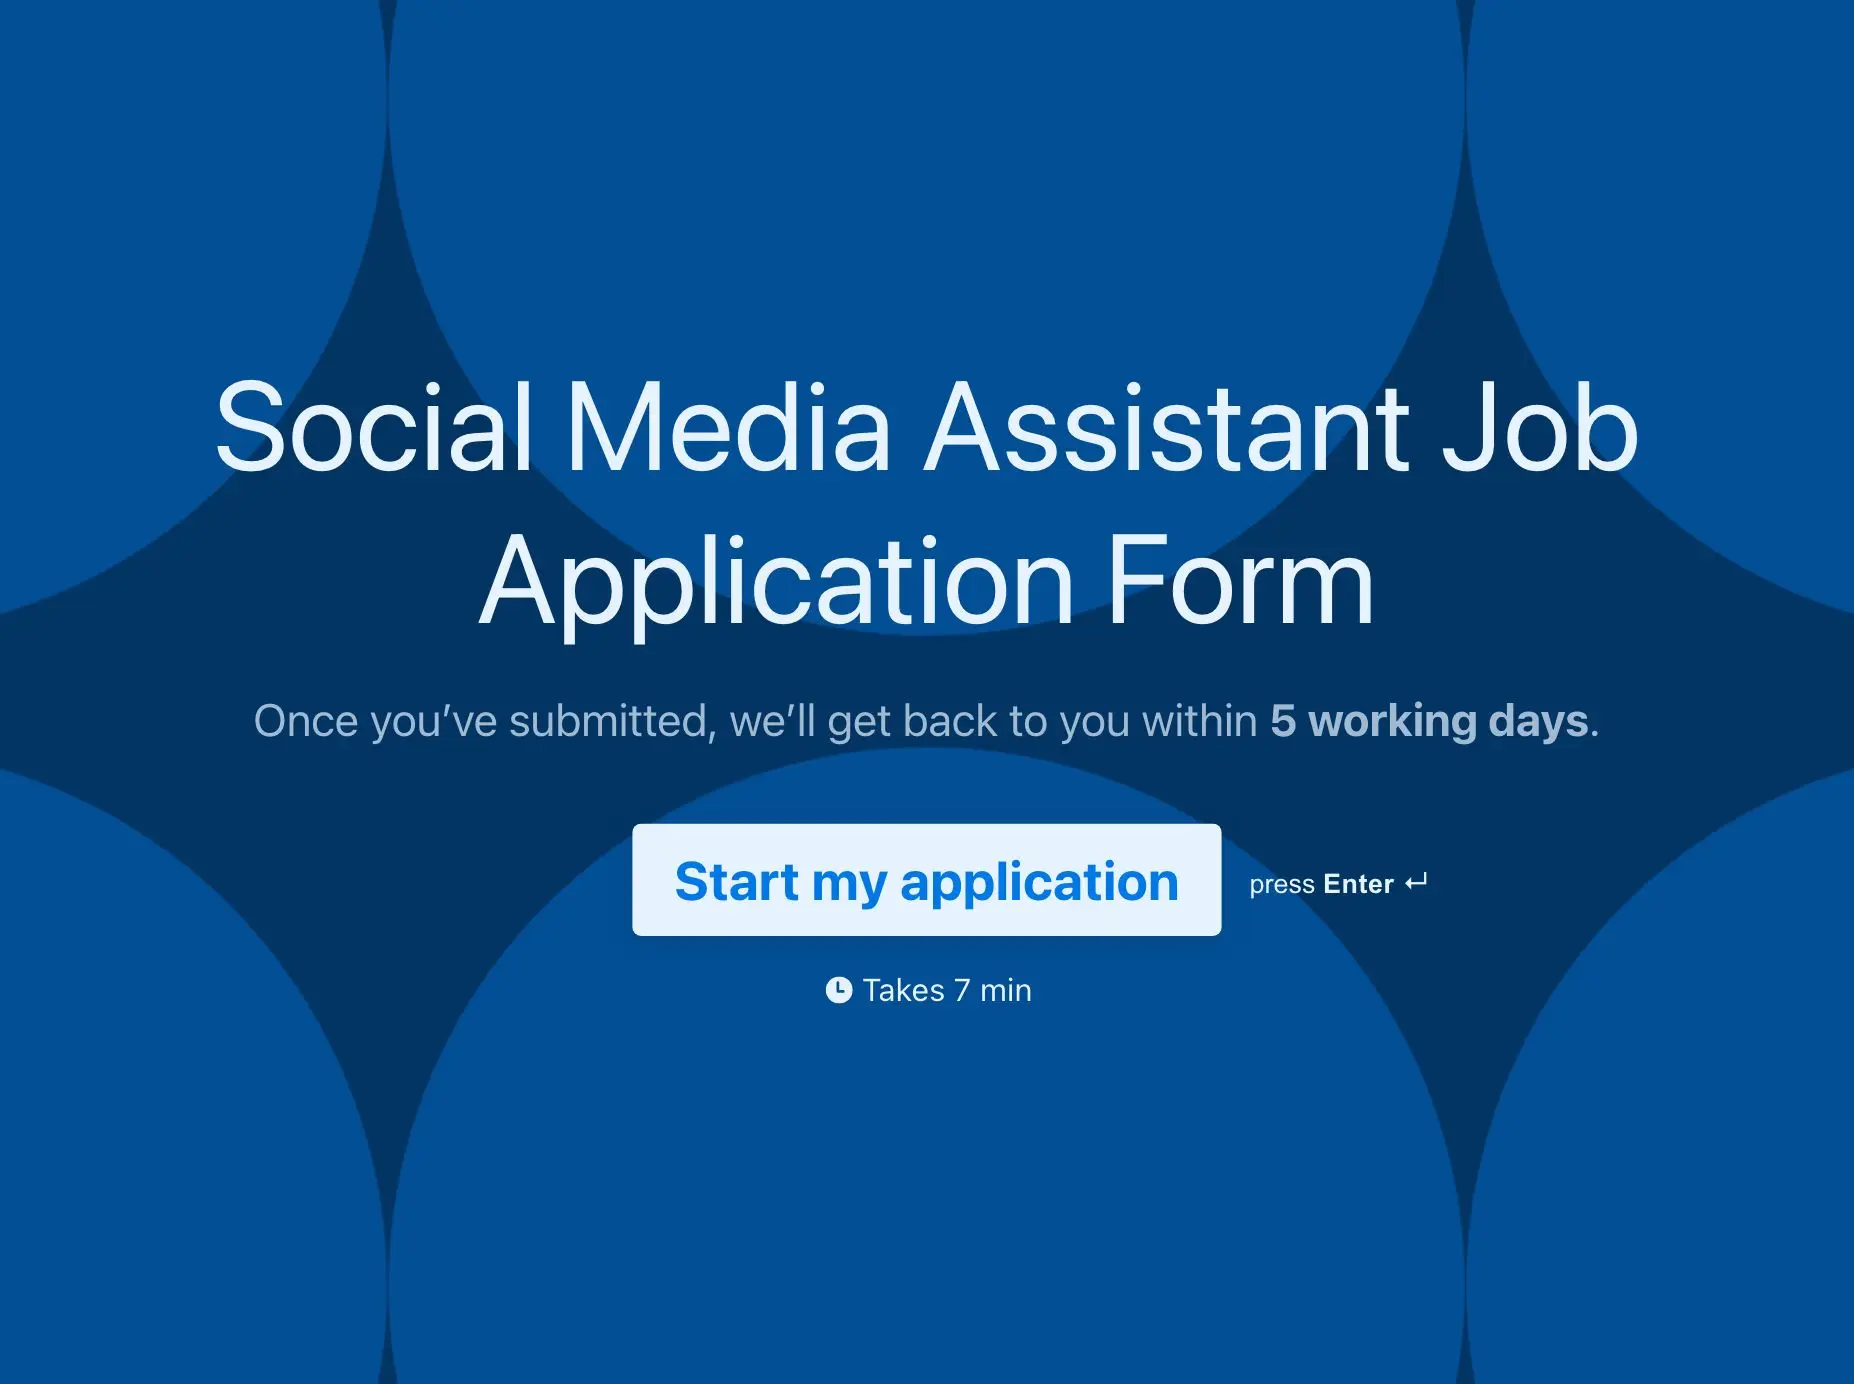 Social Media Assistant Job Application Form Template Hero